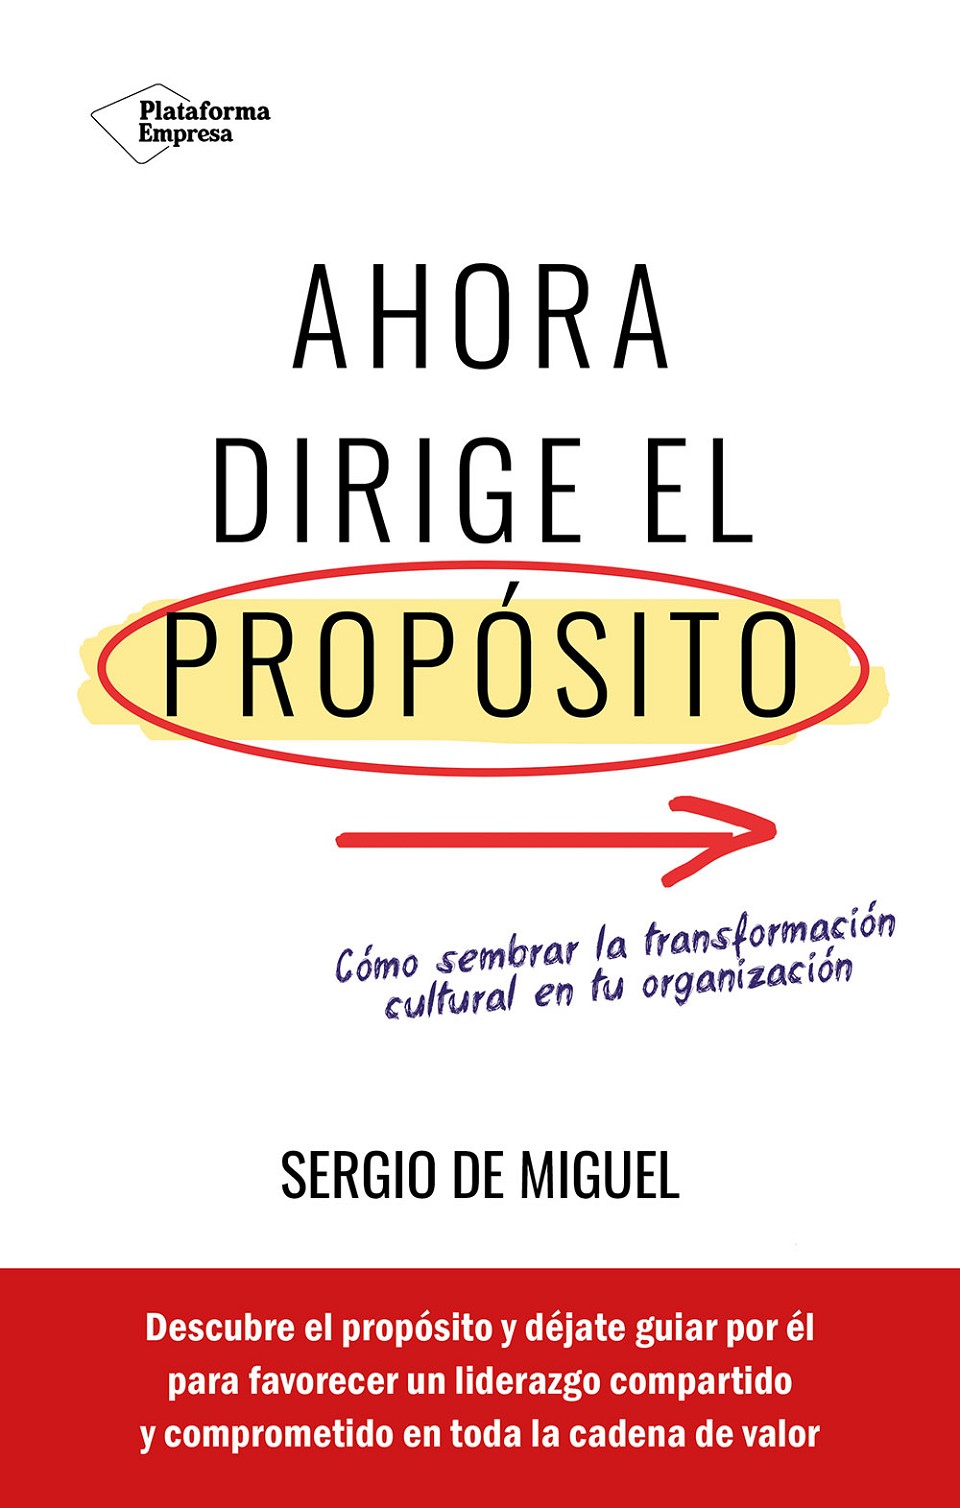 Sergio de Miguel - Ahora dirige el propósito